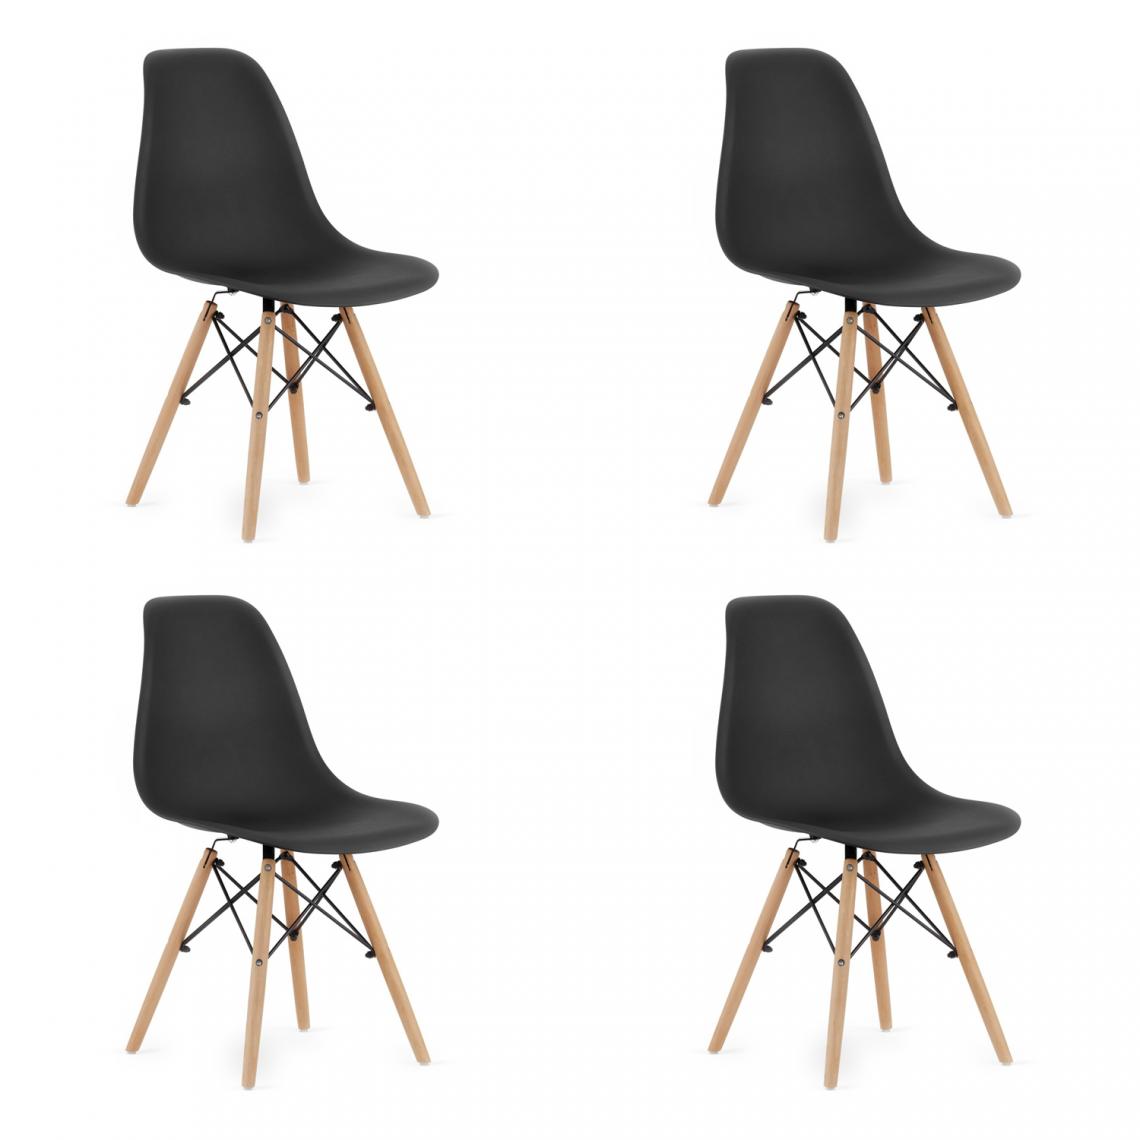 Hucoco - OSATA - Lot de 4 chaises en PP style moderne salon/cuisine - 81x54x46cm - Chaise de salle à manger - Noir - Chaises